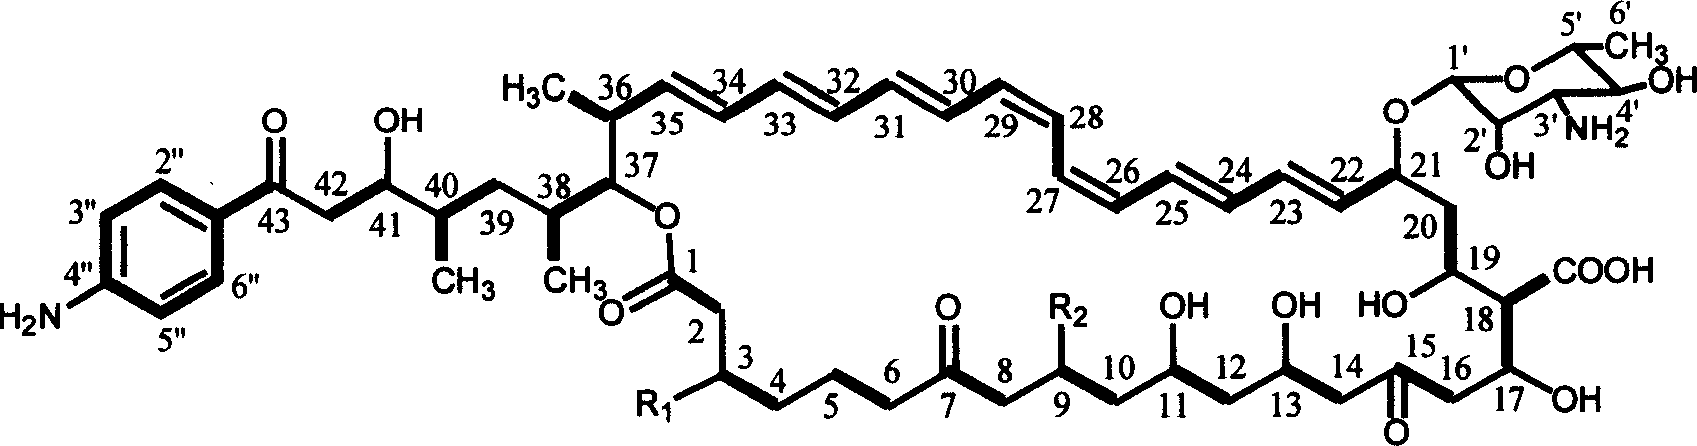 Heptaene macrolide polyketone antibiotic FR-008 compound